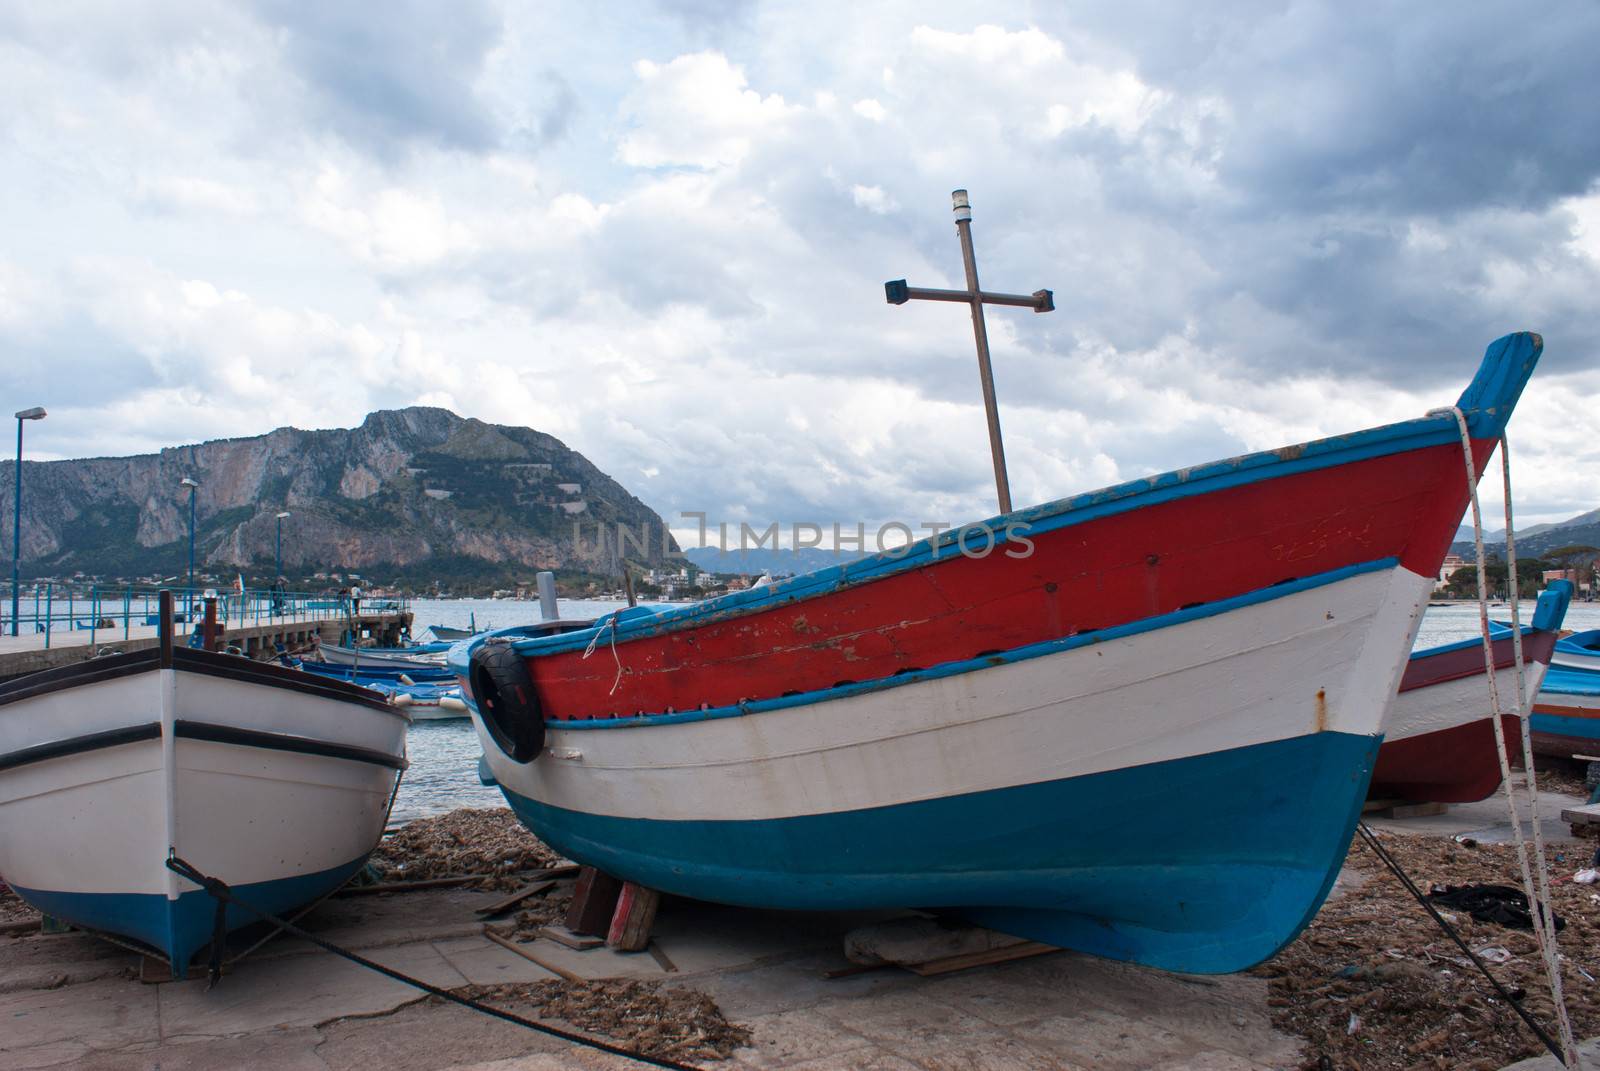 Old boats in Mondello beach. Palermo, Sicily, Italy